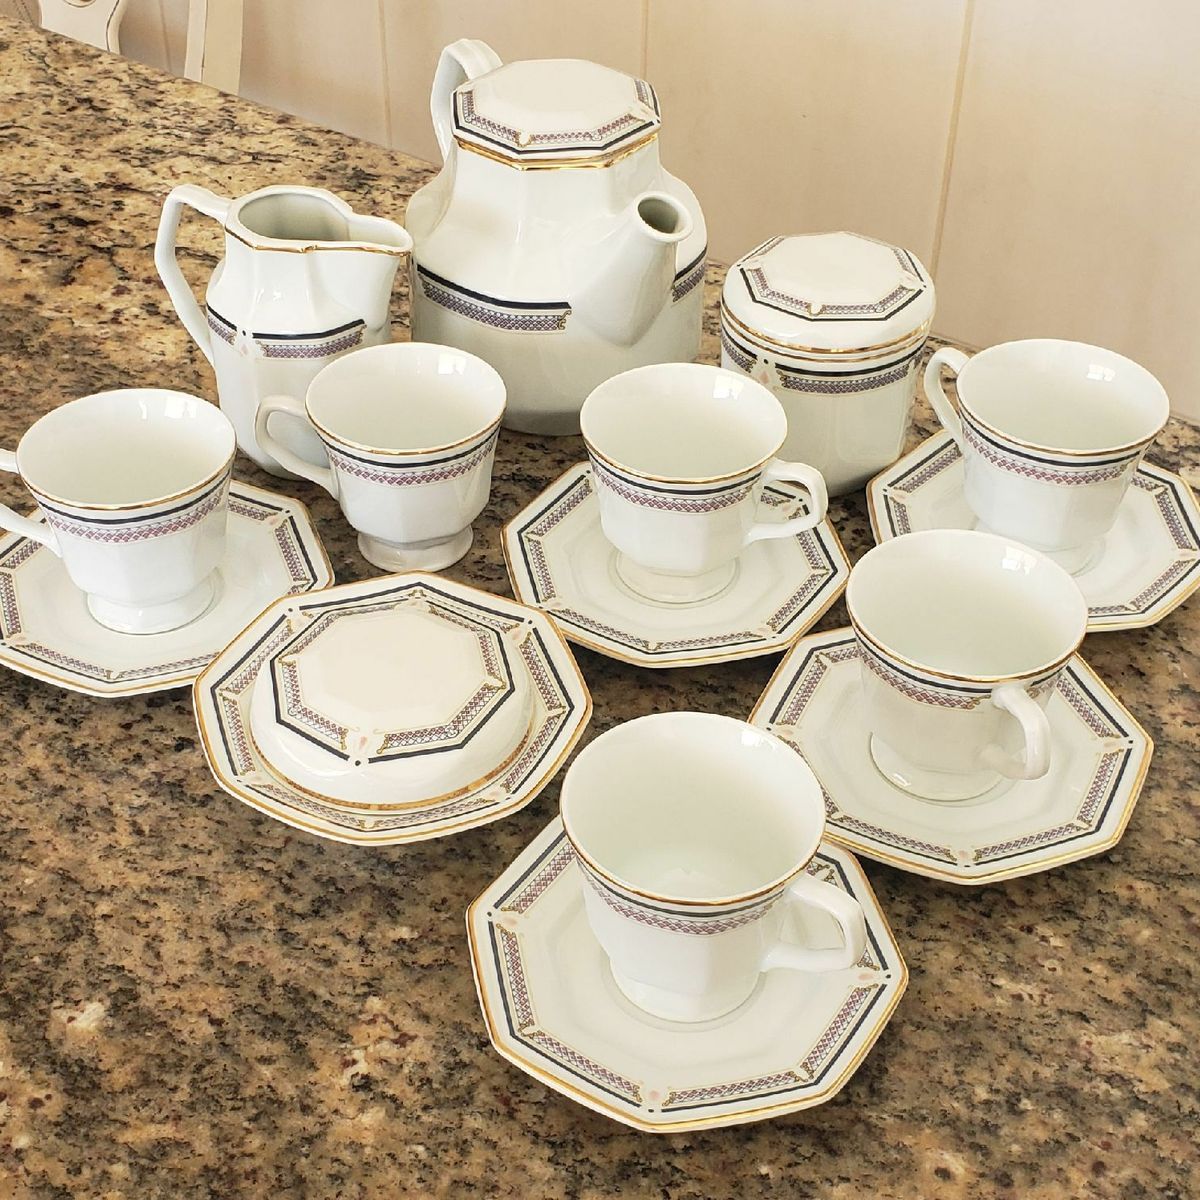 PORCELANA SCHMIDT - Antigo jogo para chá, em porcelana